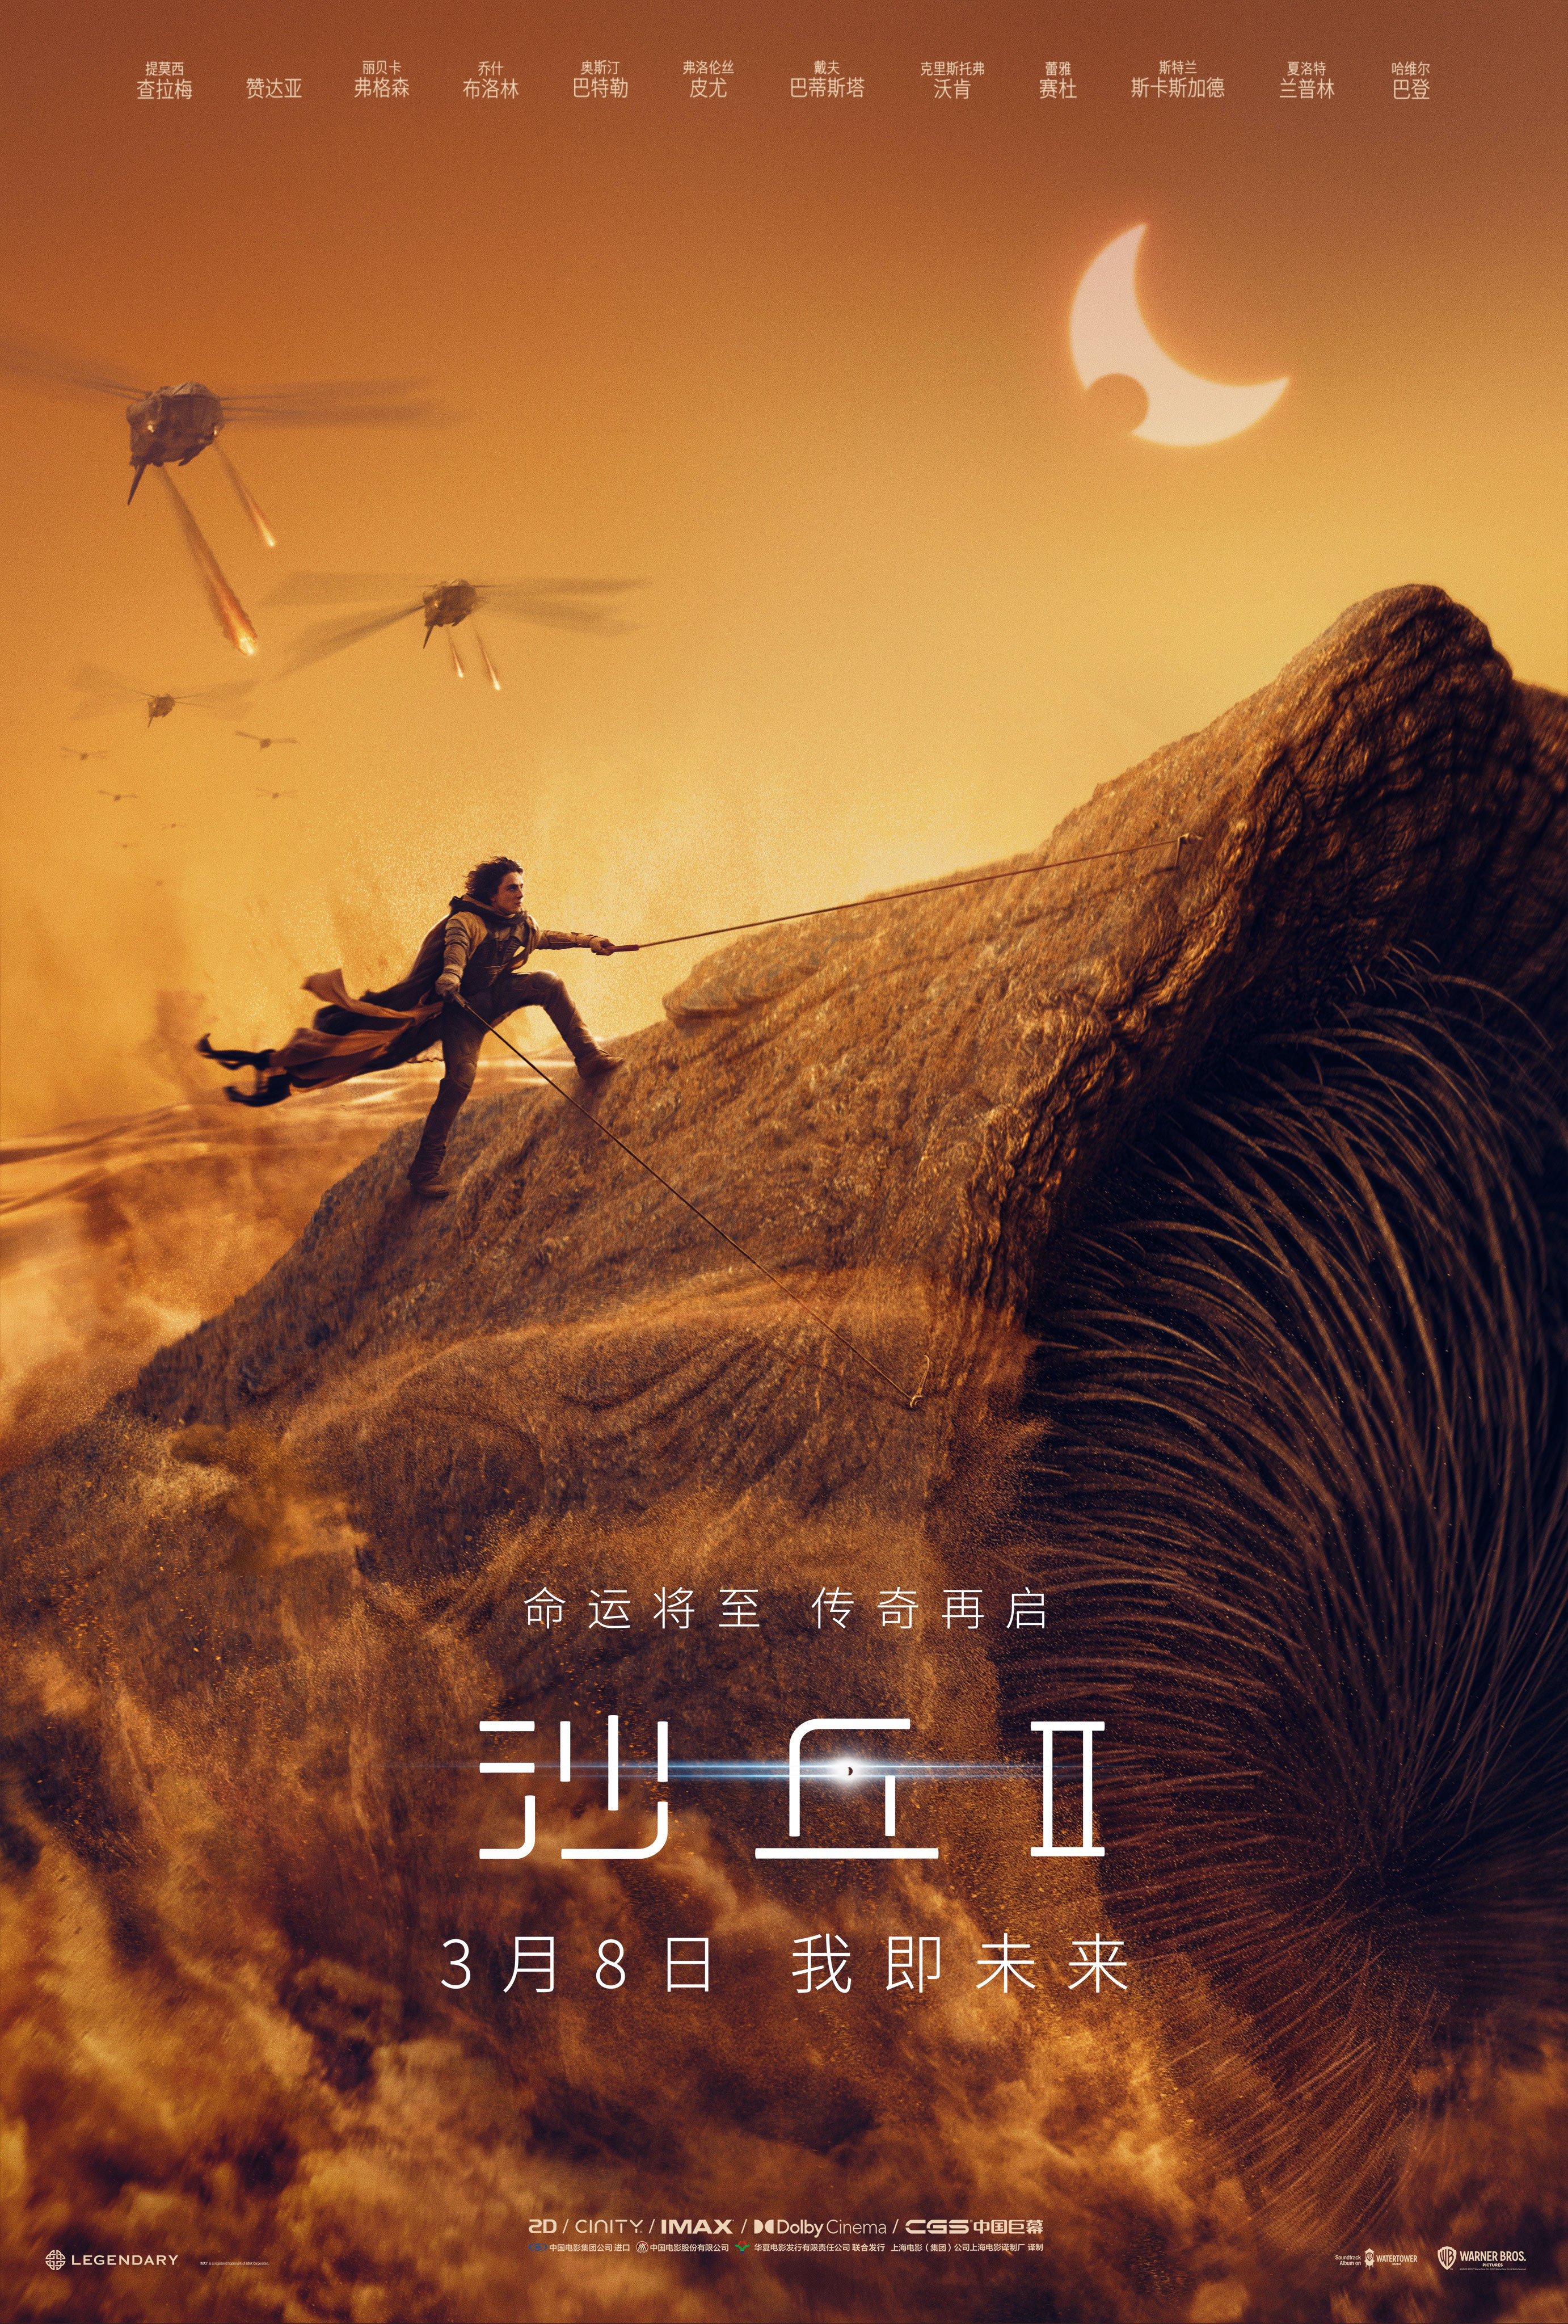 科幻巨制《沙丘2》发布中国独家预告 3.8全国公映封面图